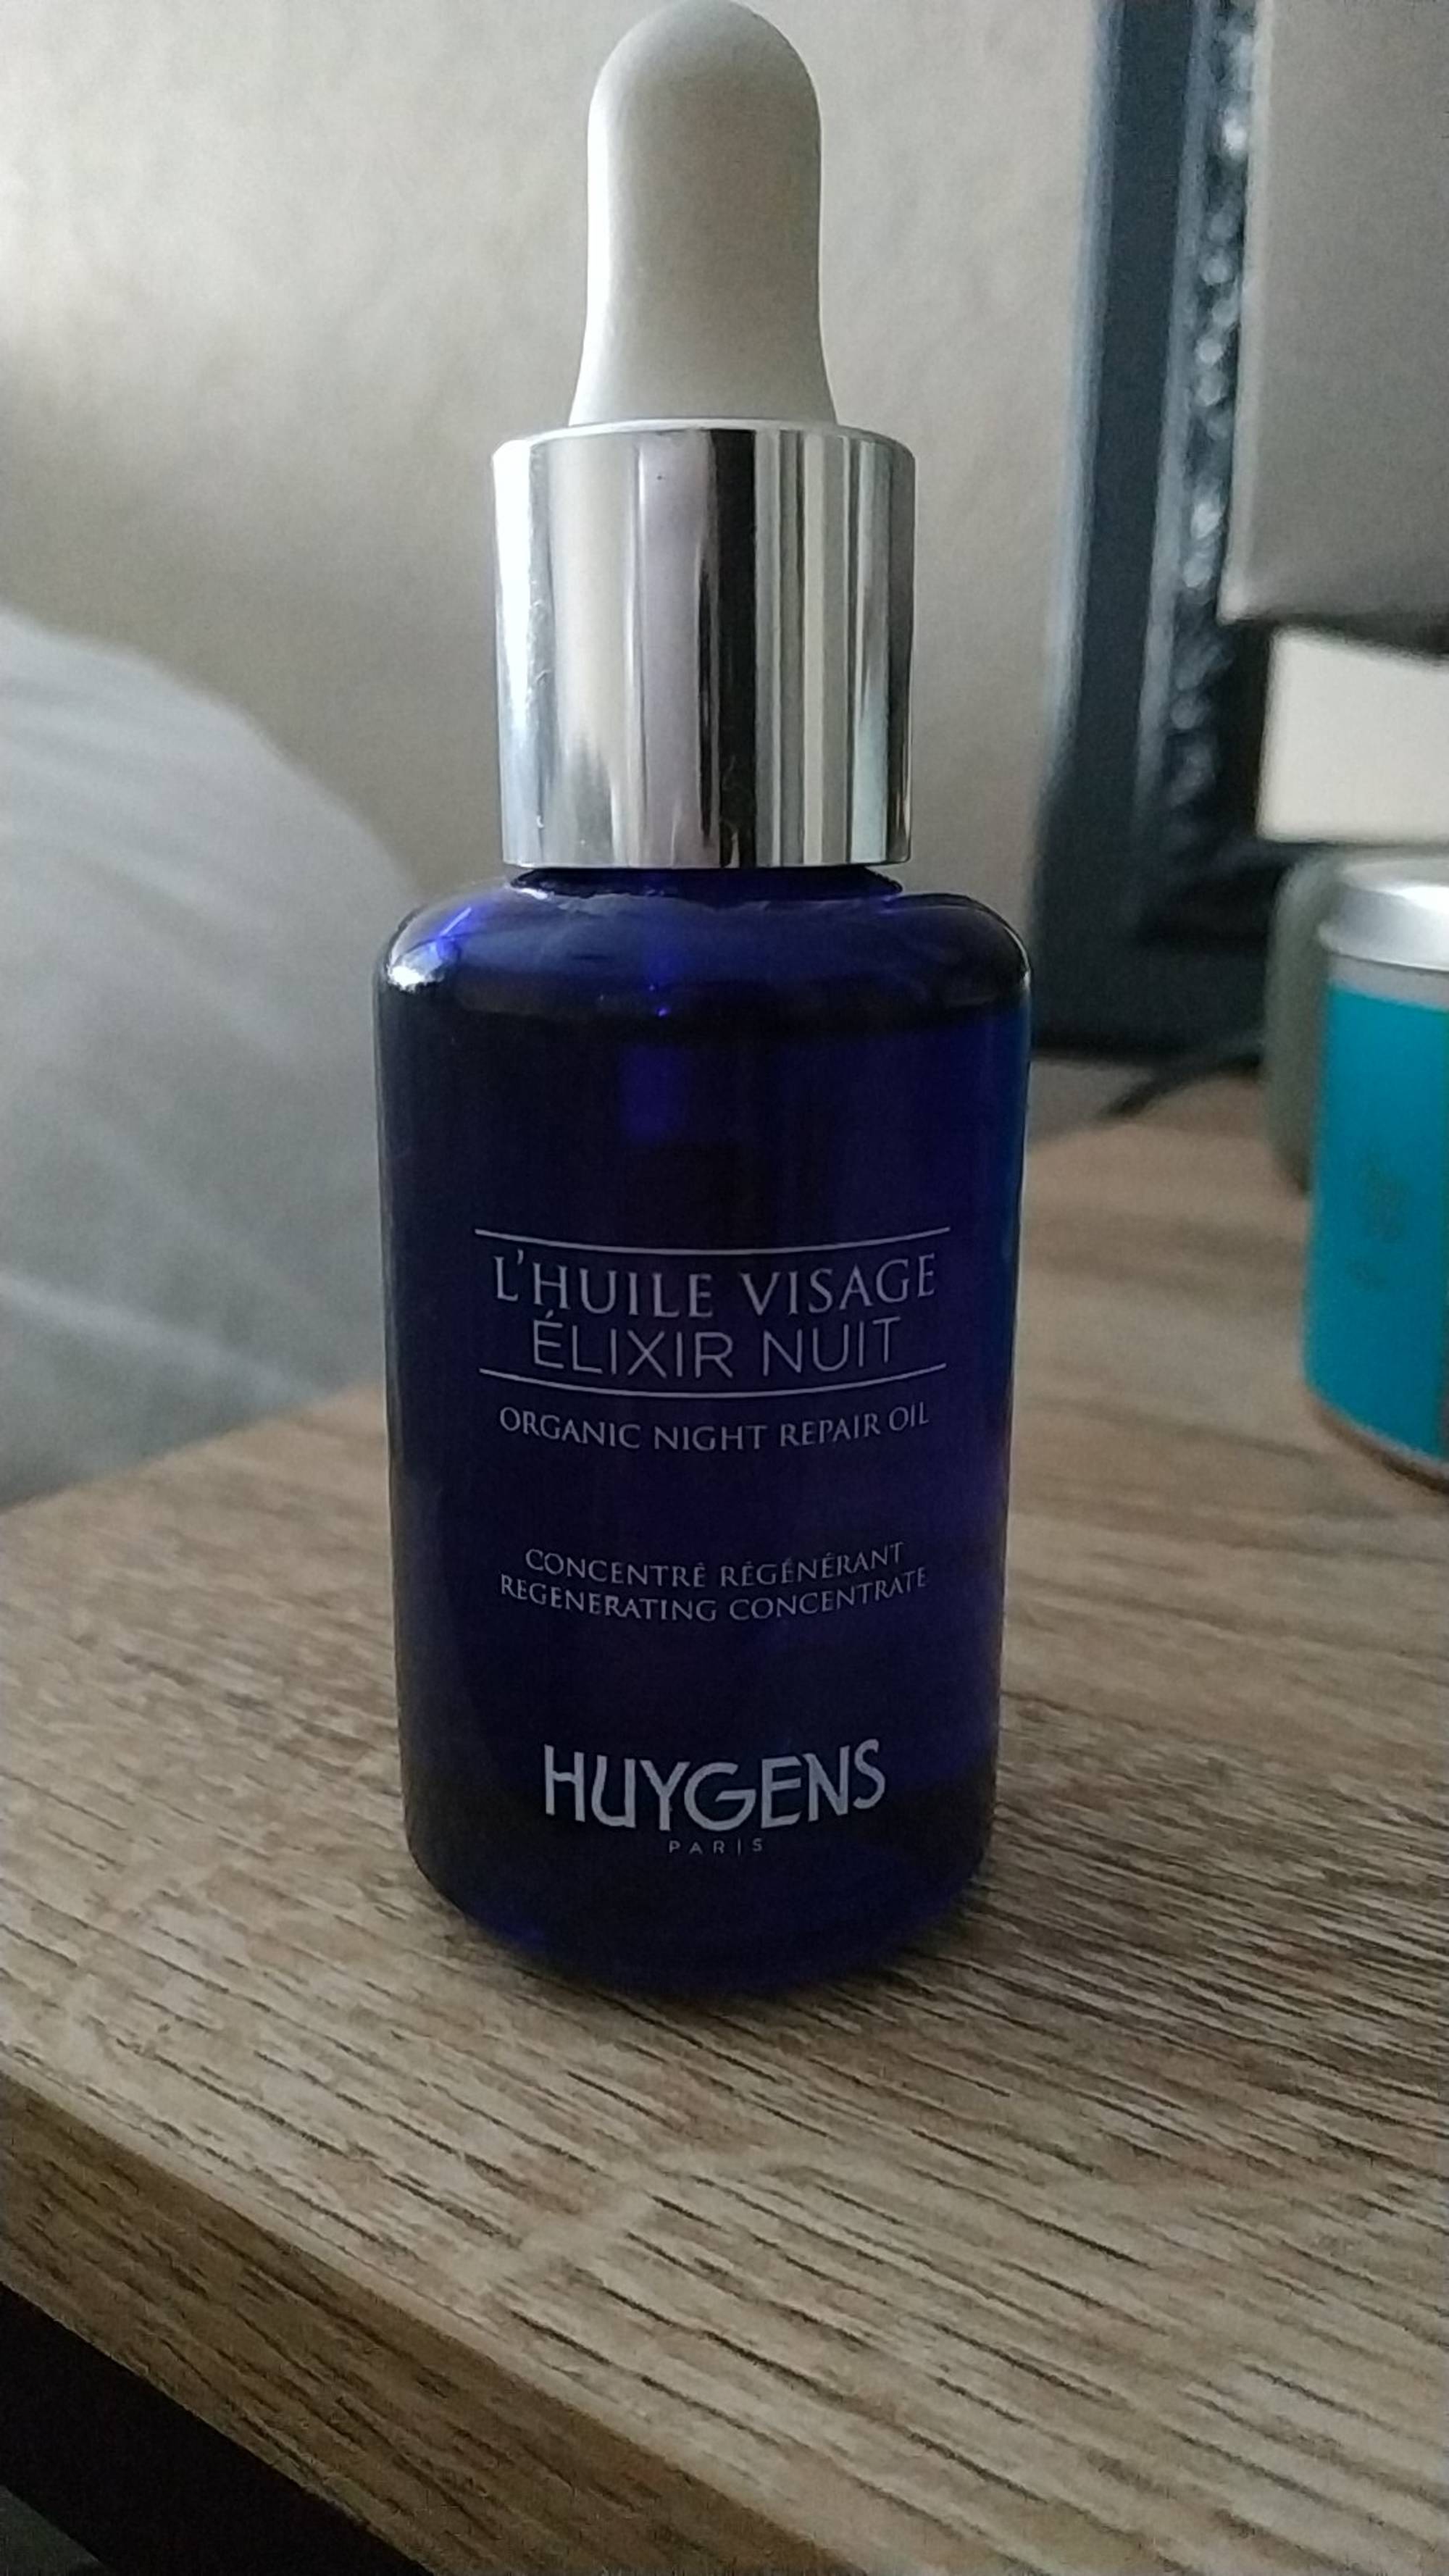 HUYGENS - L'huile visage élixir nuit concentré régénérant